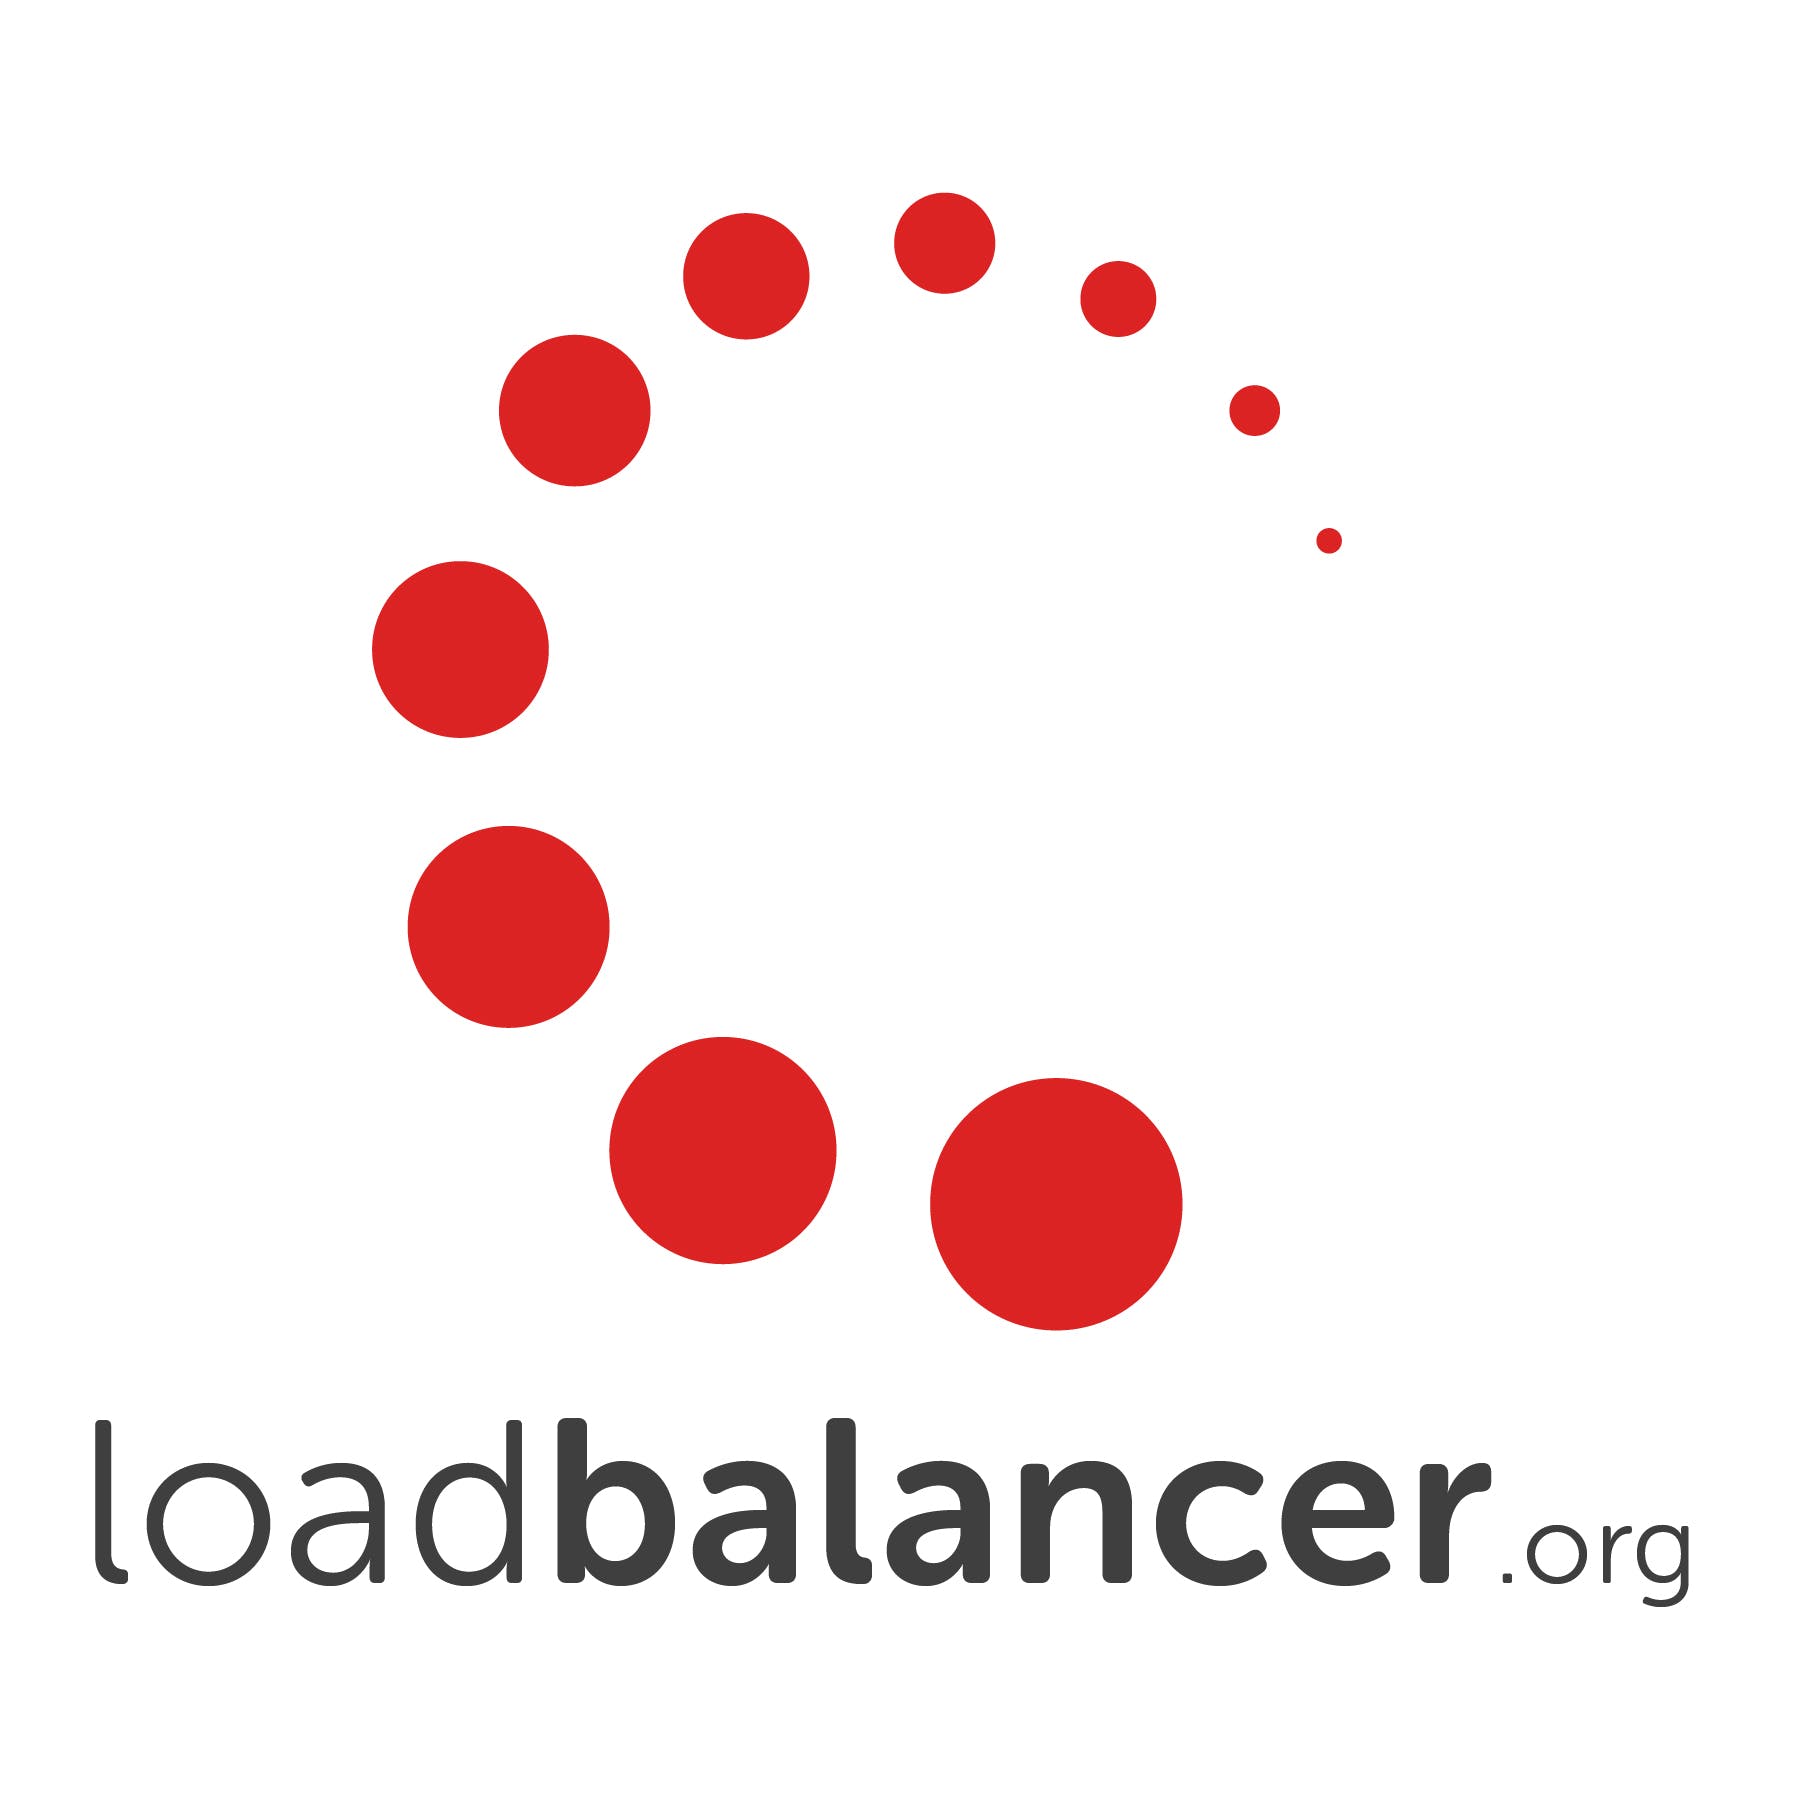 Load Balancer Enterprise ADC